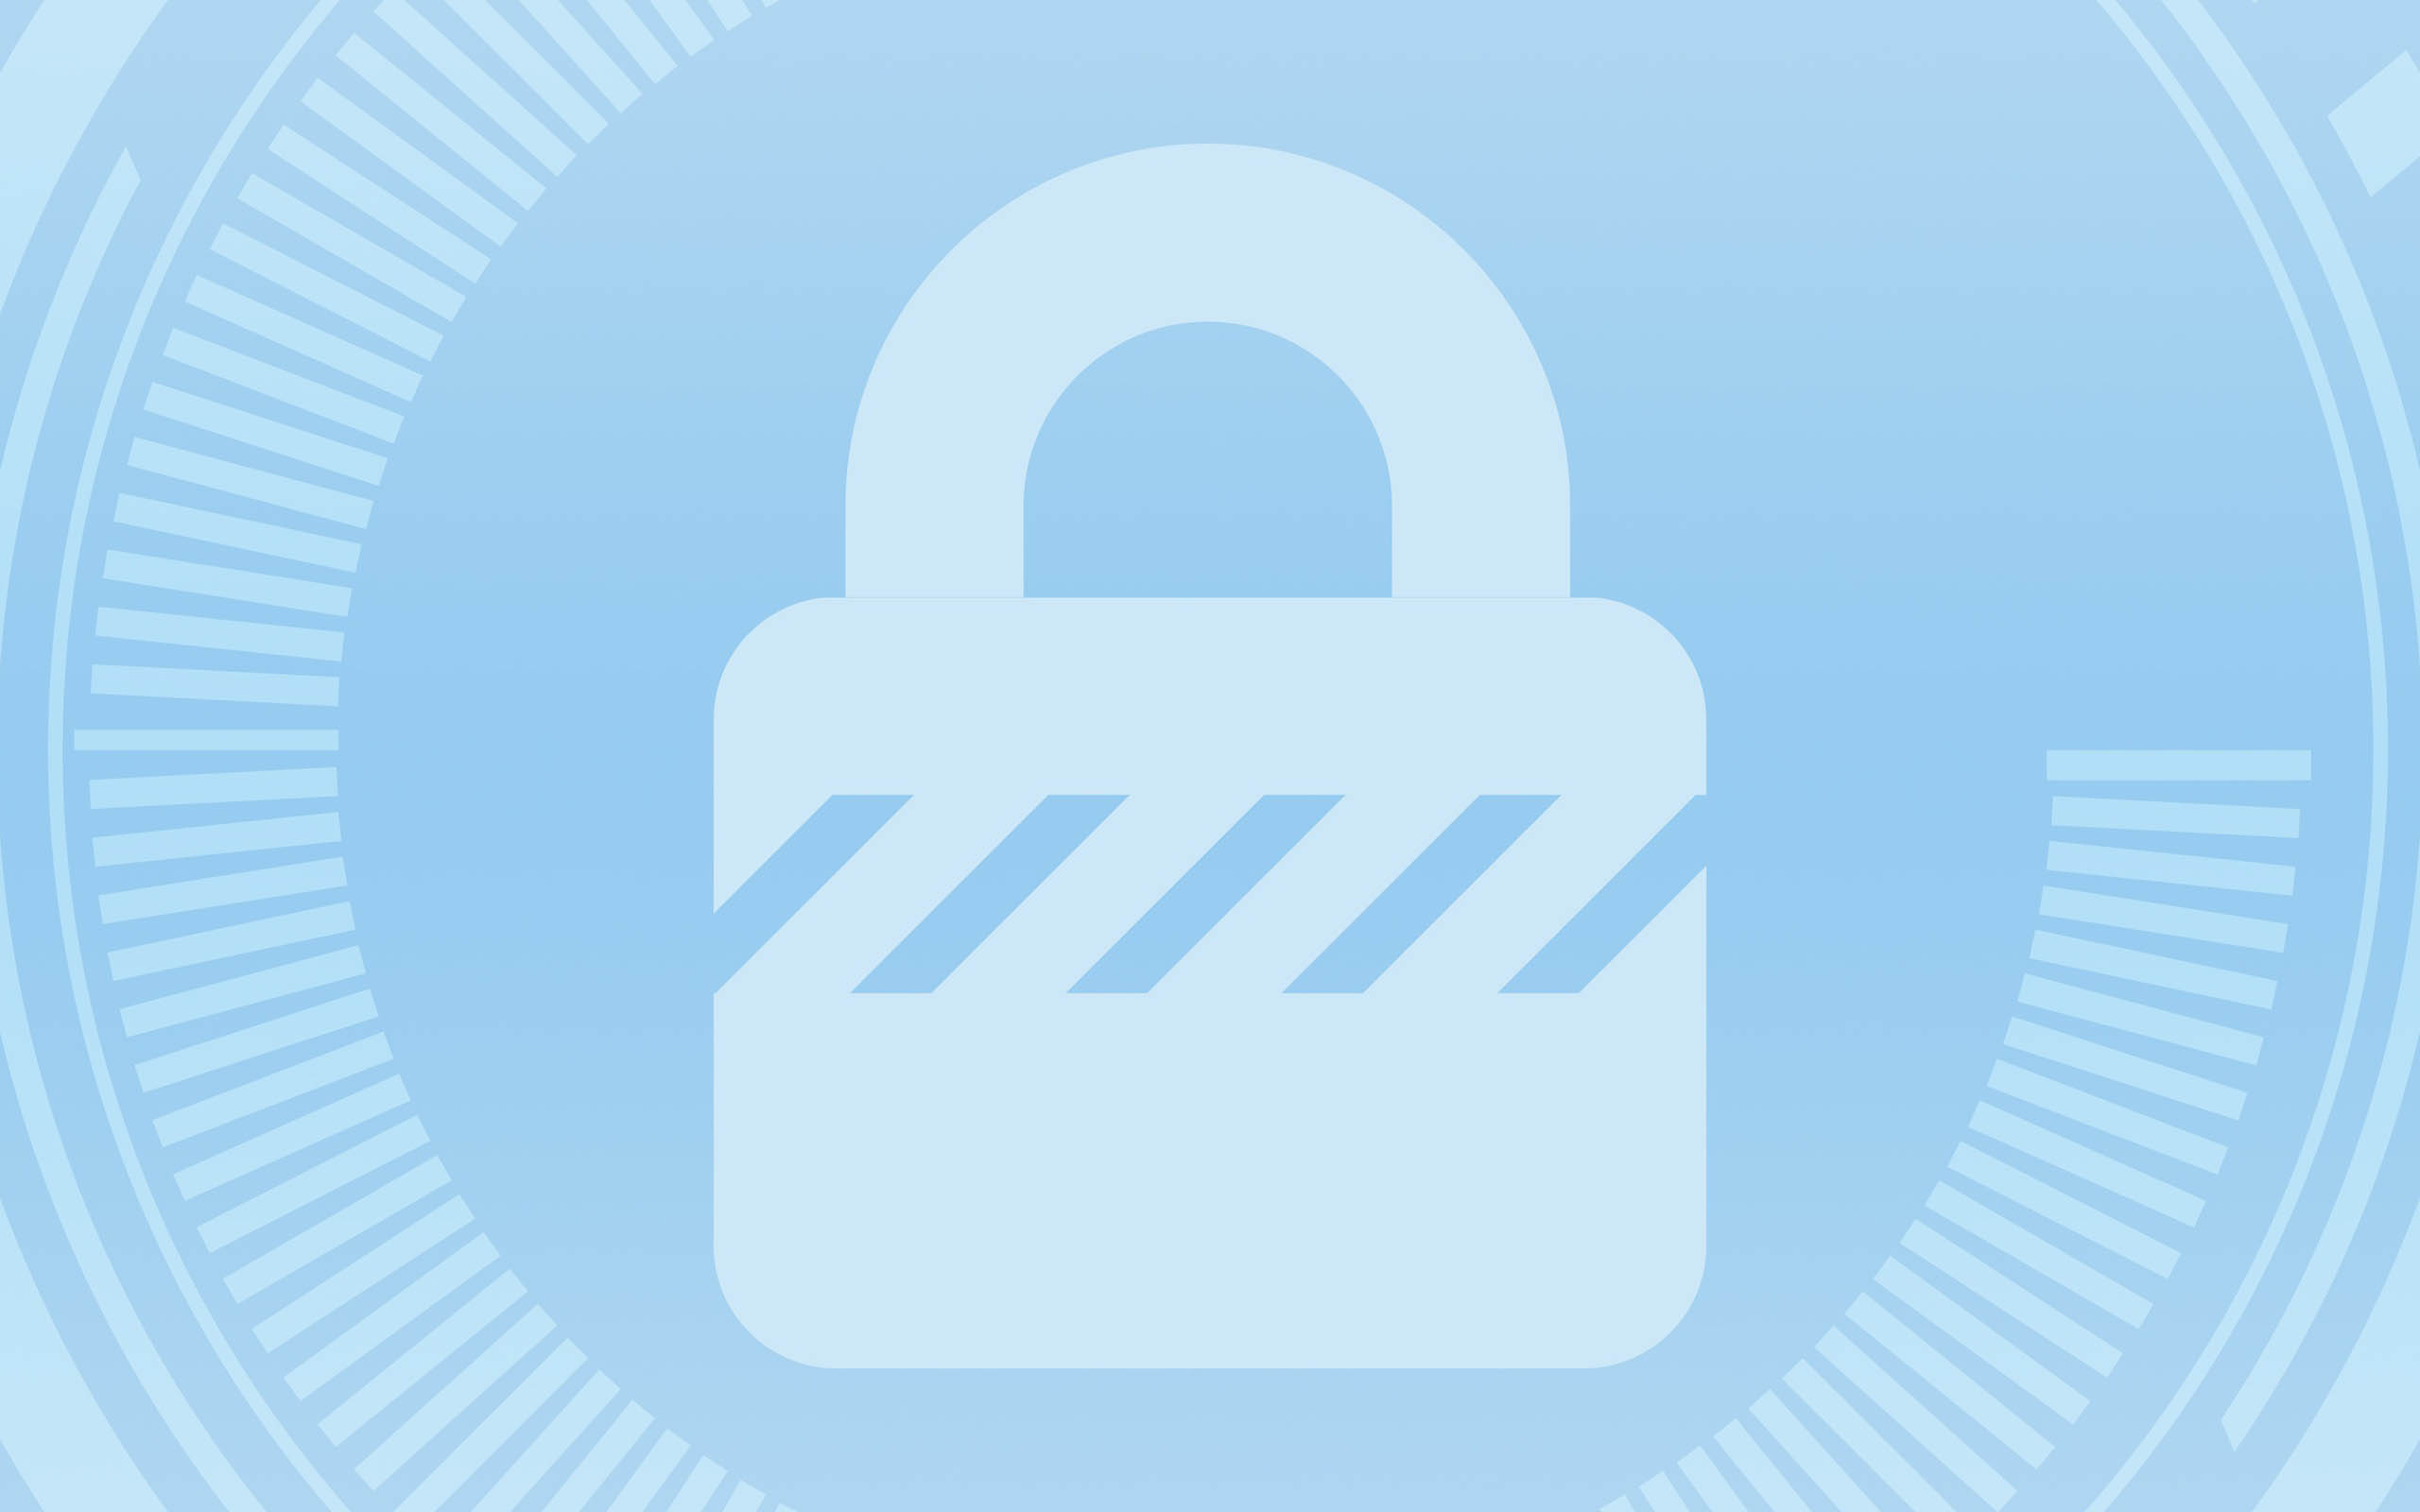 Datei Mit Passwort Schutzen So Sind Sie Auf Der Sicheren Seite Lizenzking Blog De